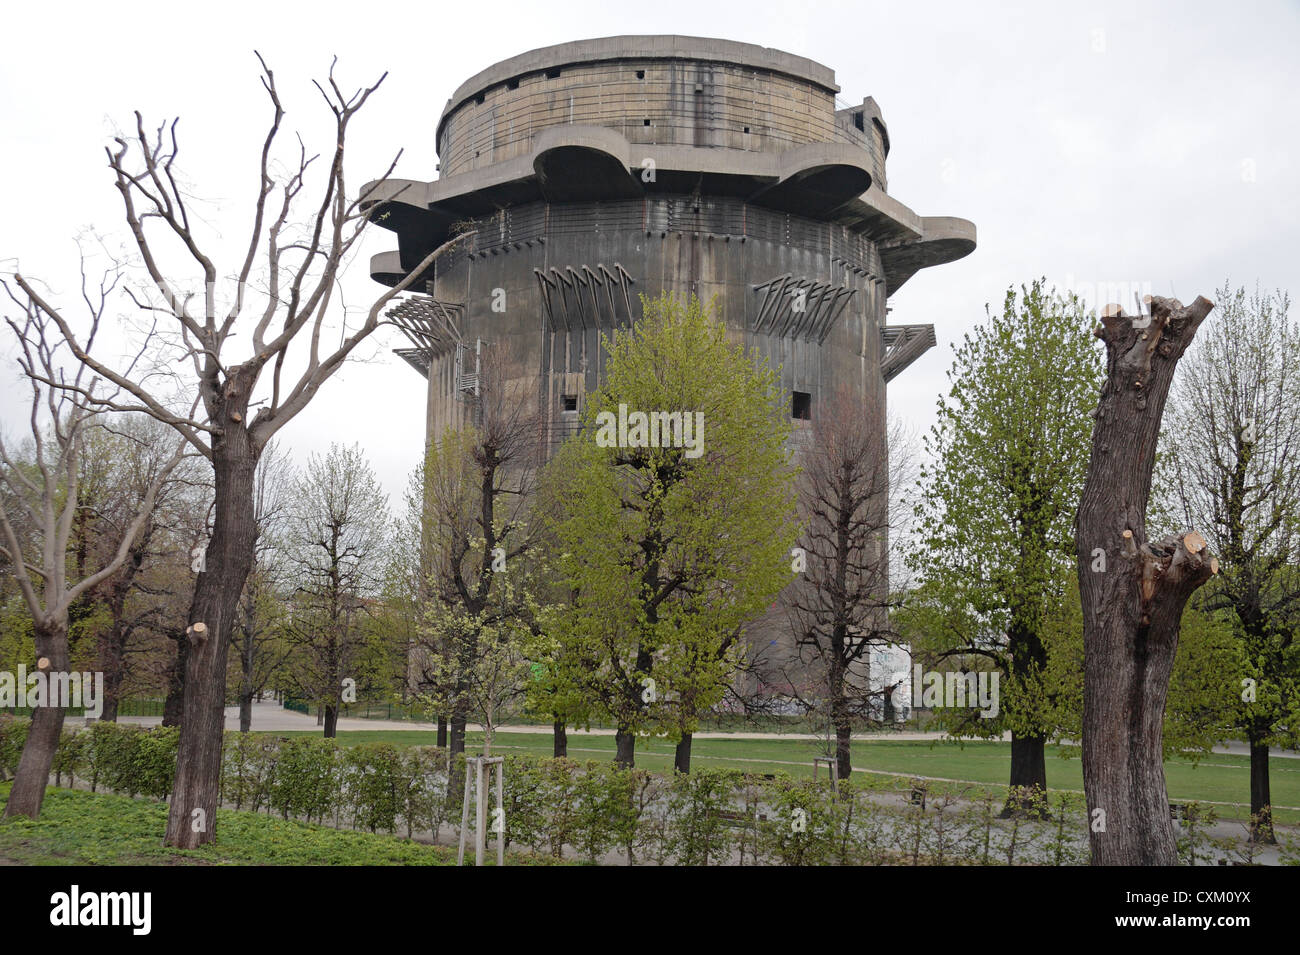 La massiccia G-Torre tedesco Seconda Guerra Mondiale anti-aerei flak torre (flackturme) in Augarten, centrale di Vienna, Austria. Foto Stock